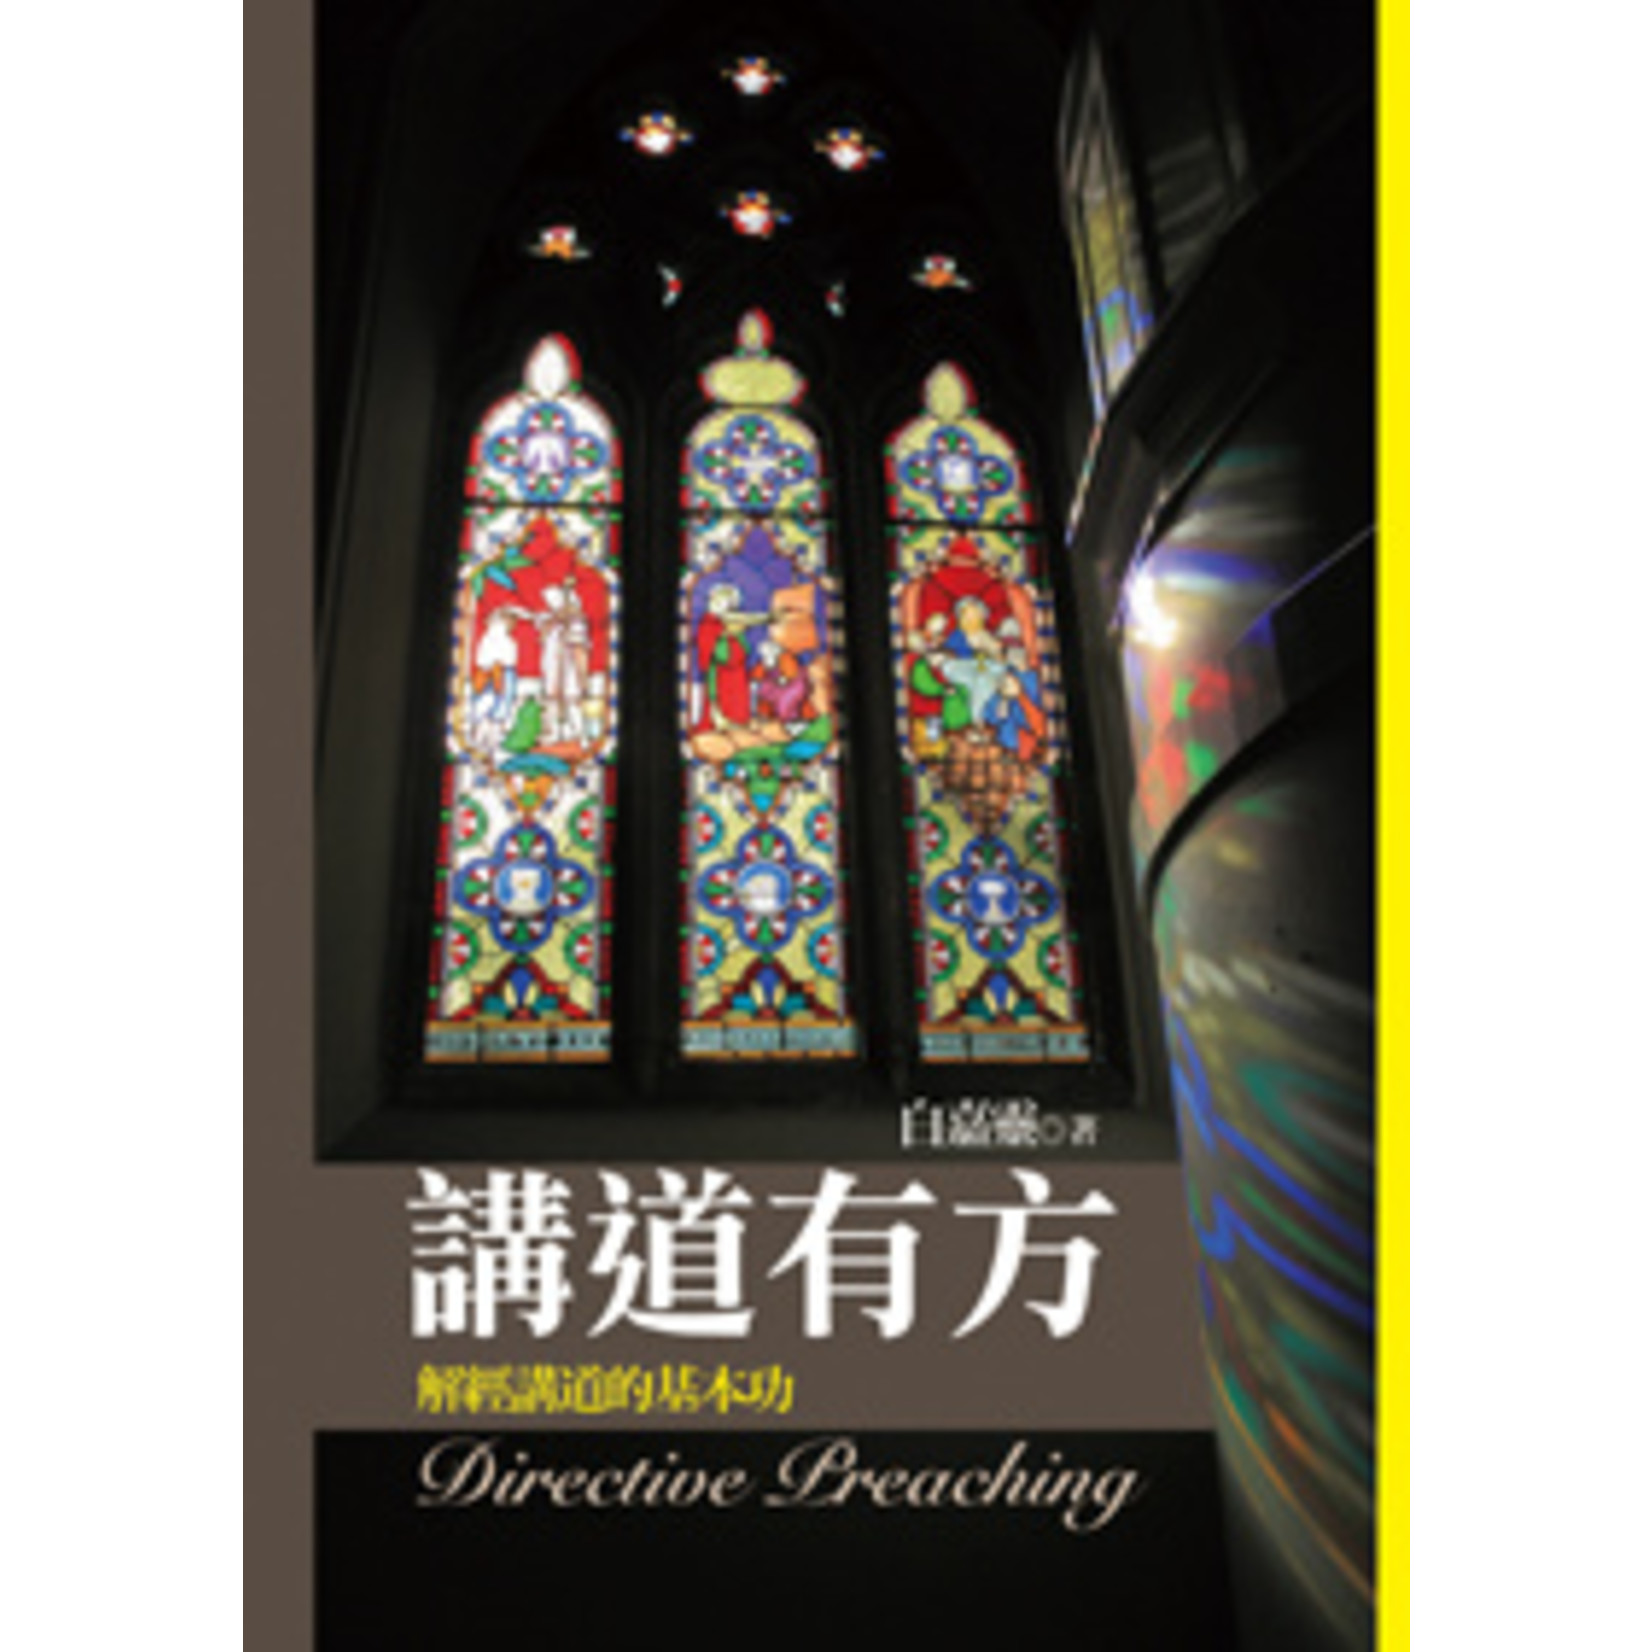 台灣中華福音神學院 China Evangelical Seminary 講道有方：解經講道的基本功 Directive Preaching